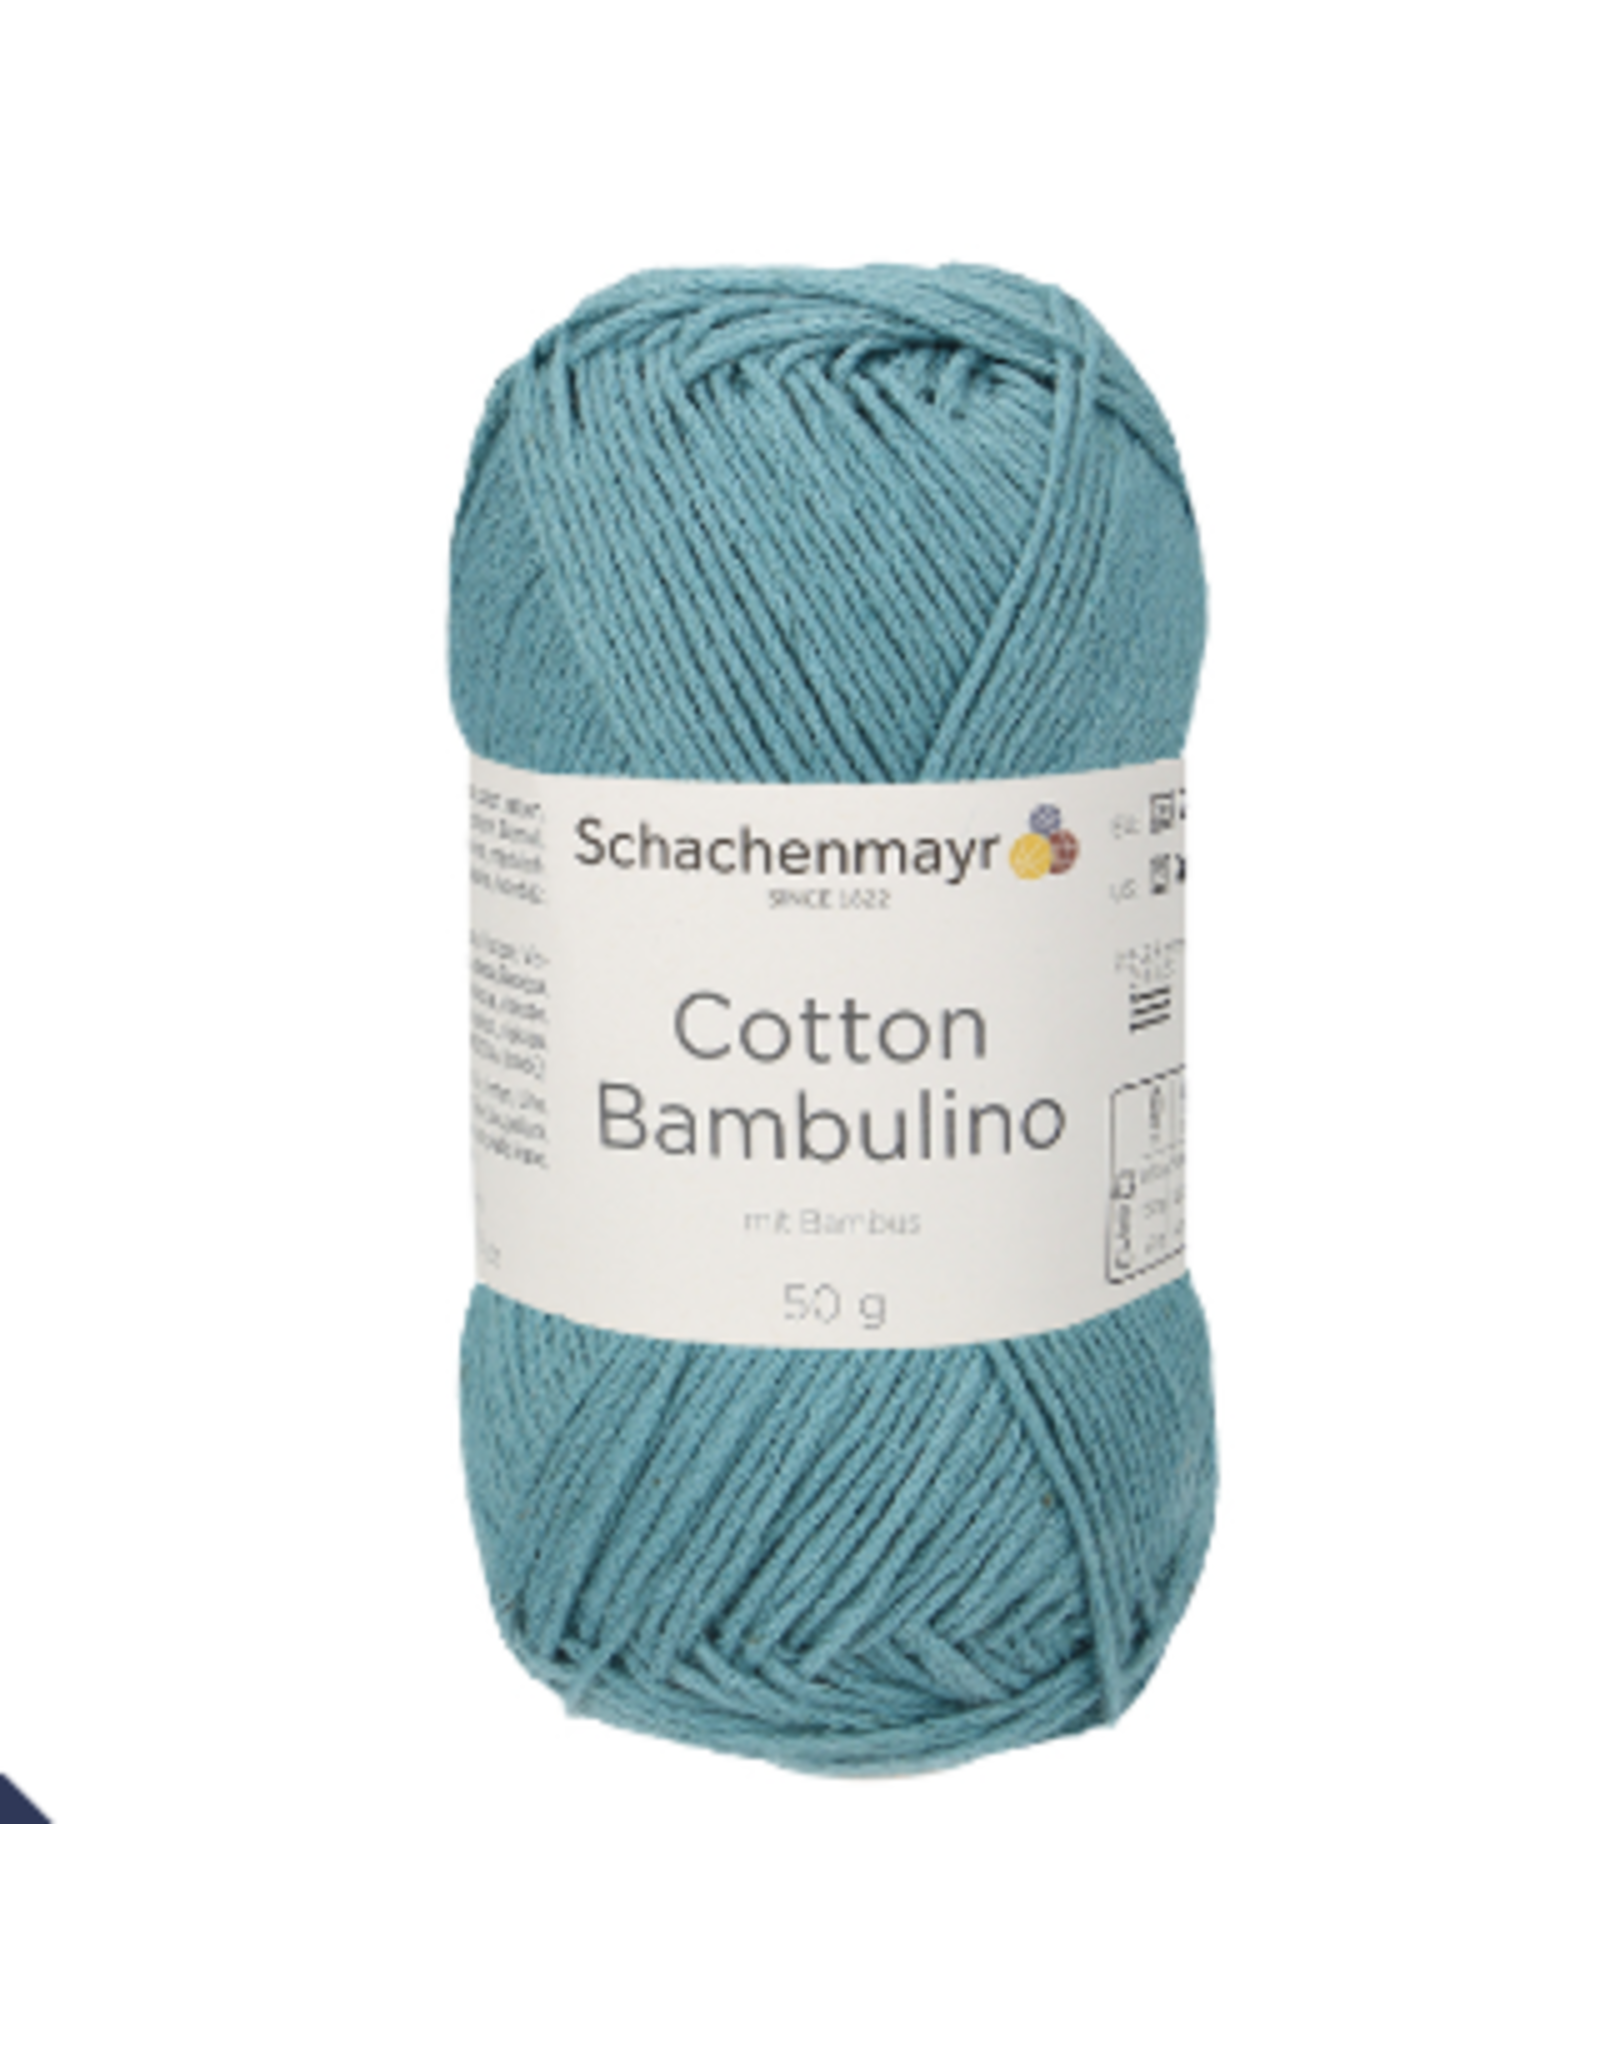 Schachenmayr Schachenmayr Cotton Bambulino 65